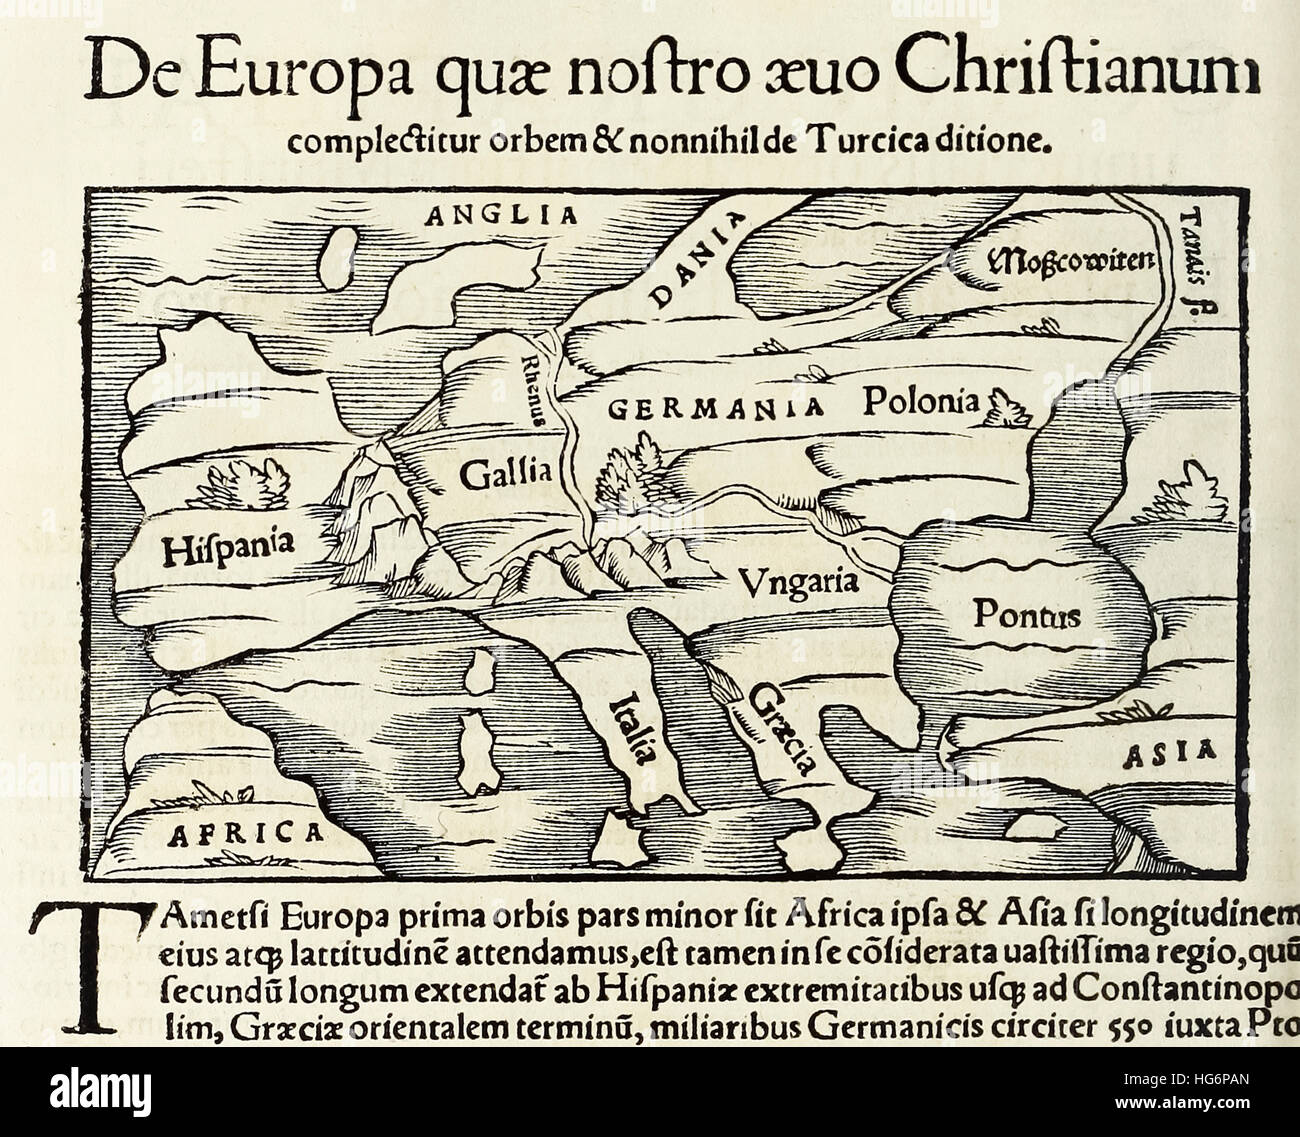 "De Europa, Quae Nostro Aeuo Christianum" eine Karte des christlichen Europas; Holzschnitt von 1550-Ausgabe der "Cosmographia" von Sebastian Münster (1488-1552). Siehe Beschreibung für mehr Informationen. Stockfoto